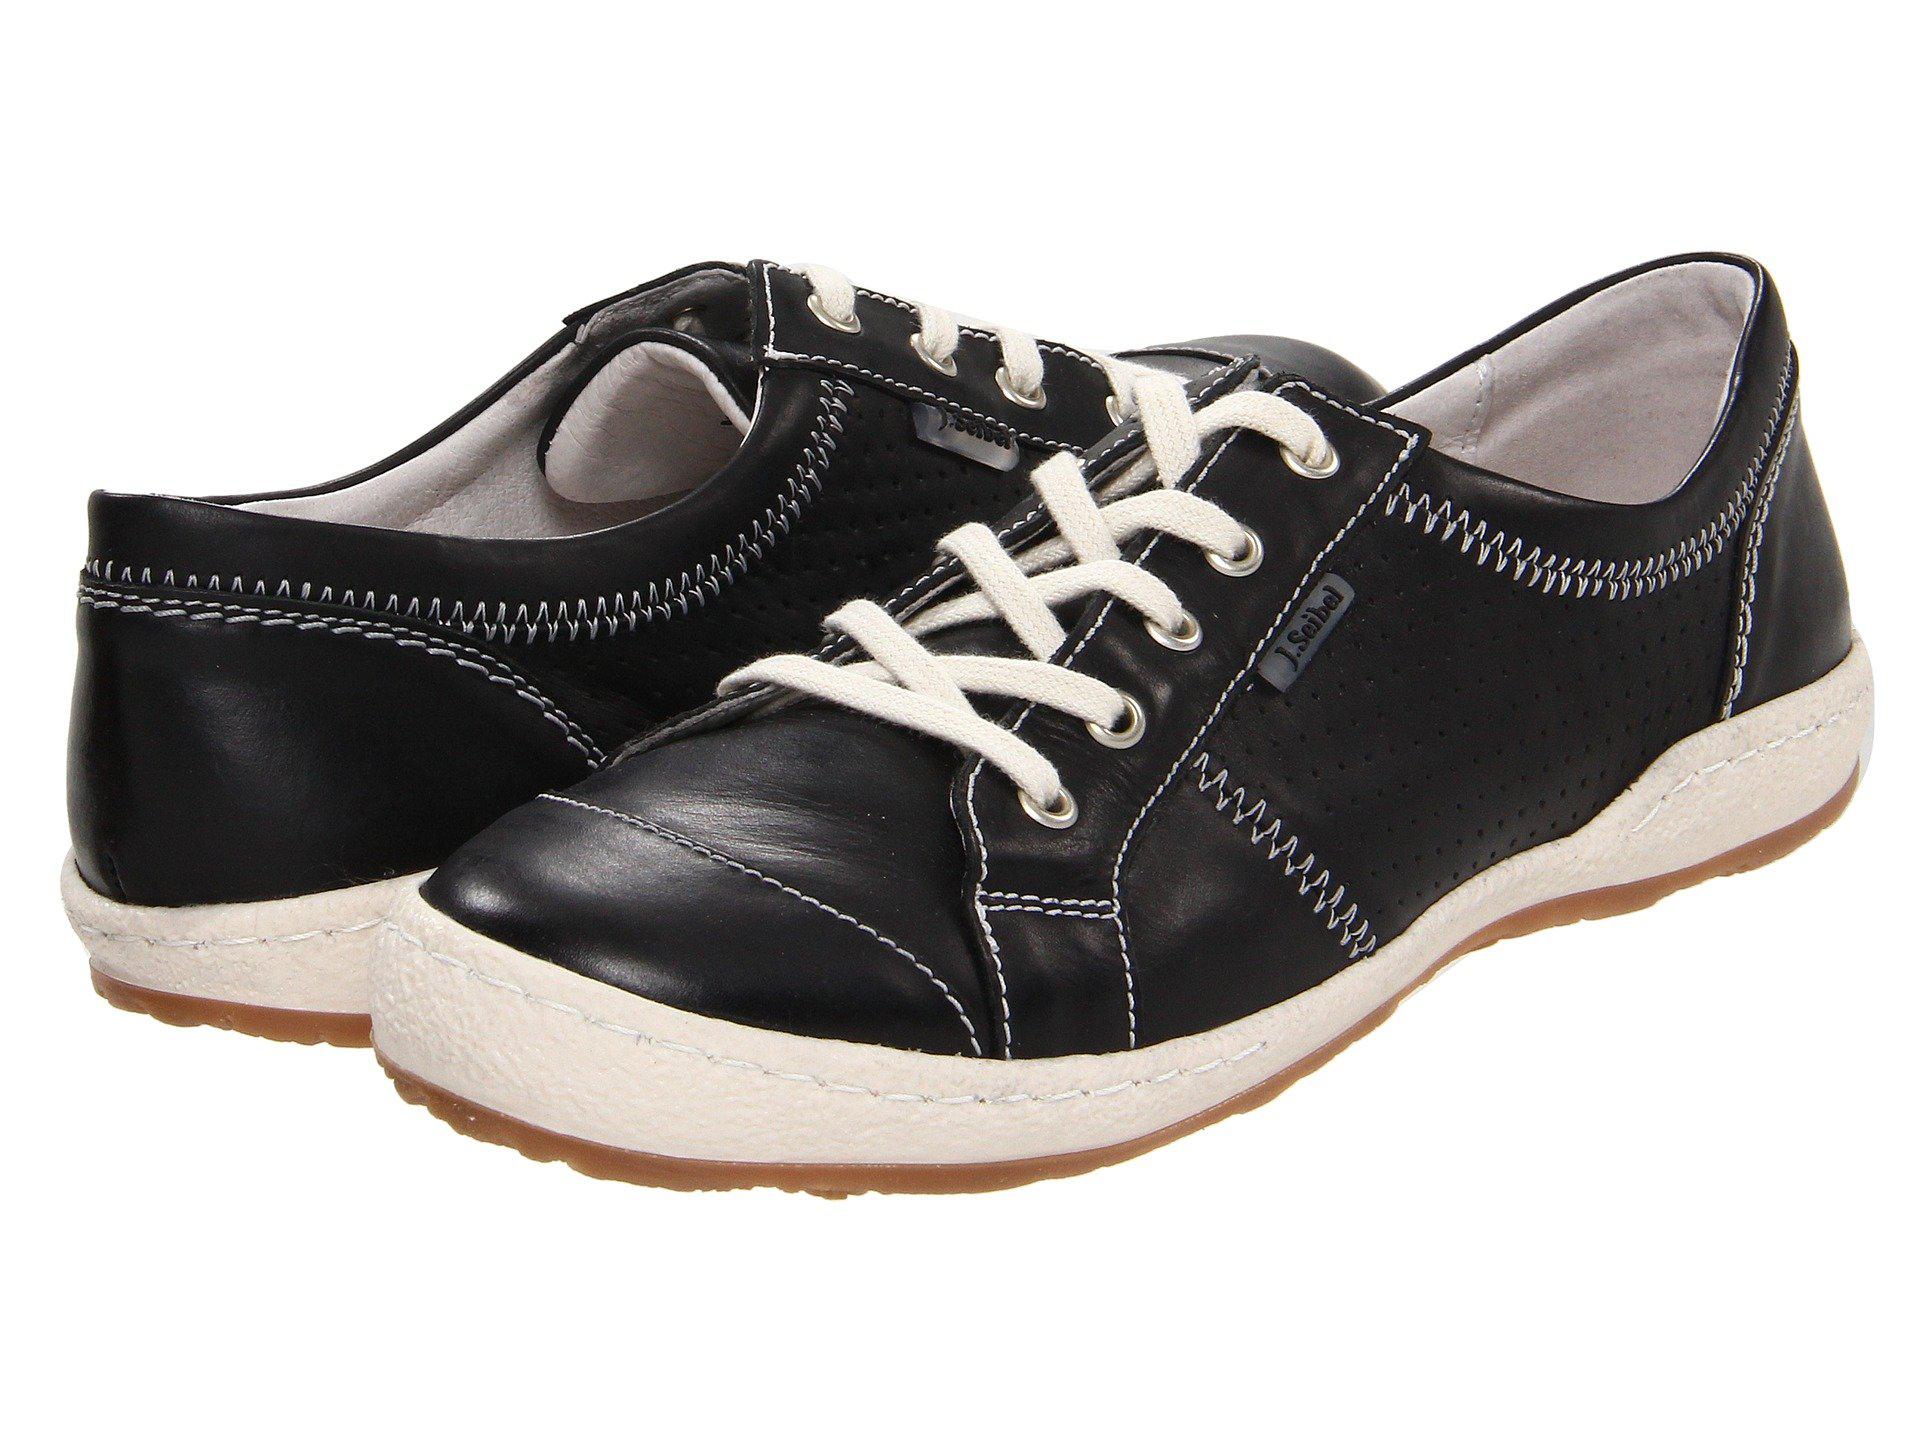 Lyst - Josef Seibel Caspian (basalt) Women's Shoes in Black